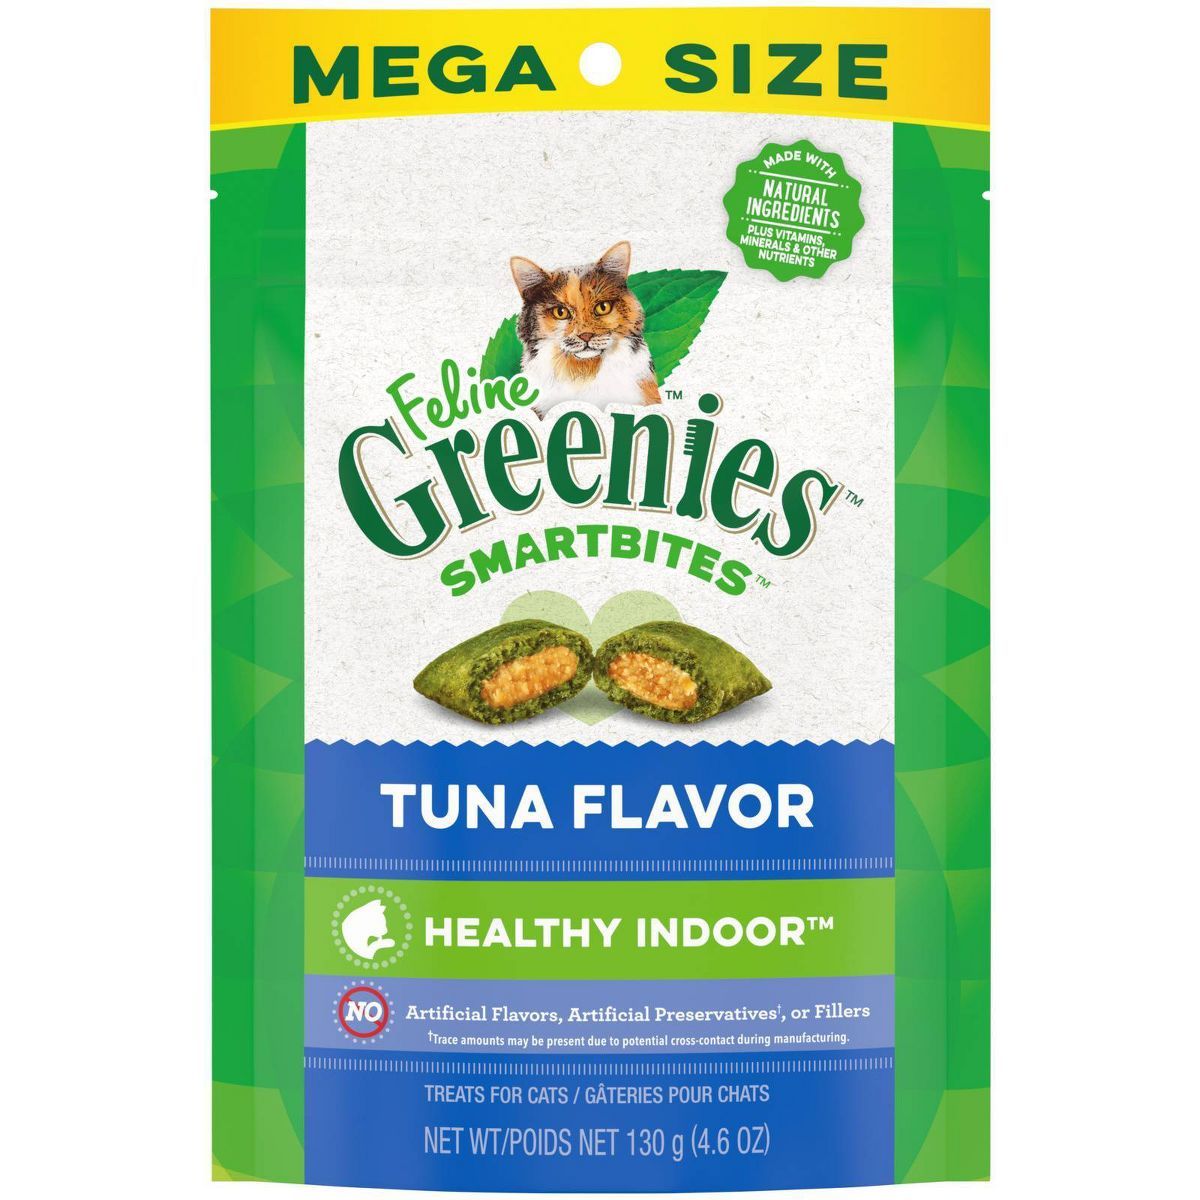 Greenies SmartBites Healthy Indoor Tuna Flavor Cat Treats | Target